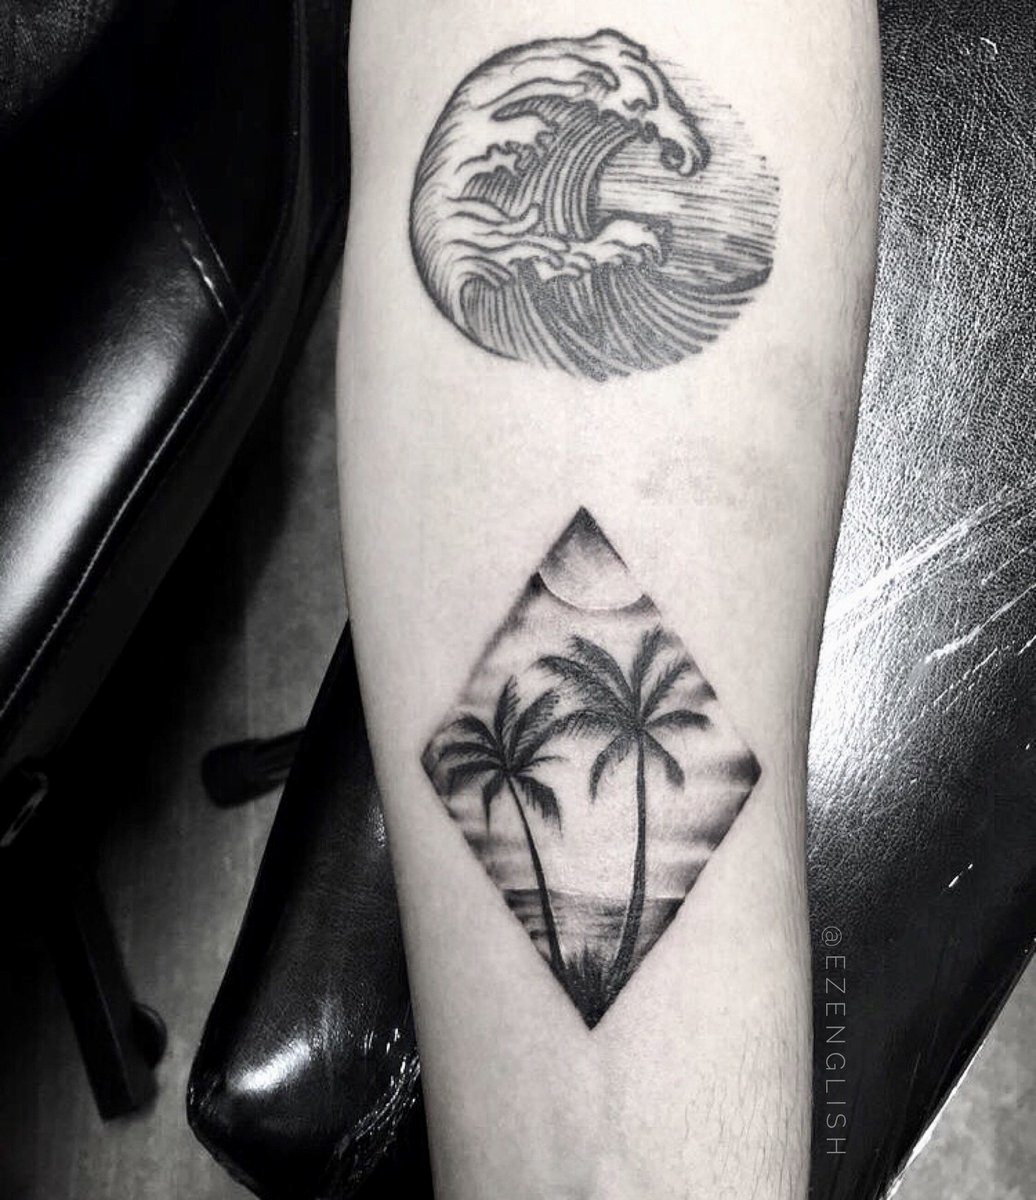 Saul Cruz Tattoos  Custom palm tree     follow tattoo tattoos  ink inked tattooed tattooartist artist art tampa florida  statenisland newyork newportrichey newyorkcity tampabay picoftheday  guyswithink girlswithtattoos 